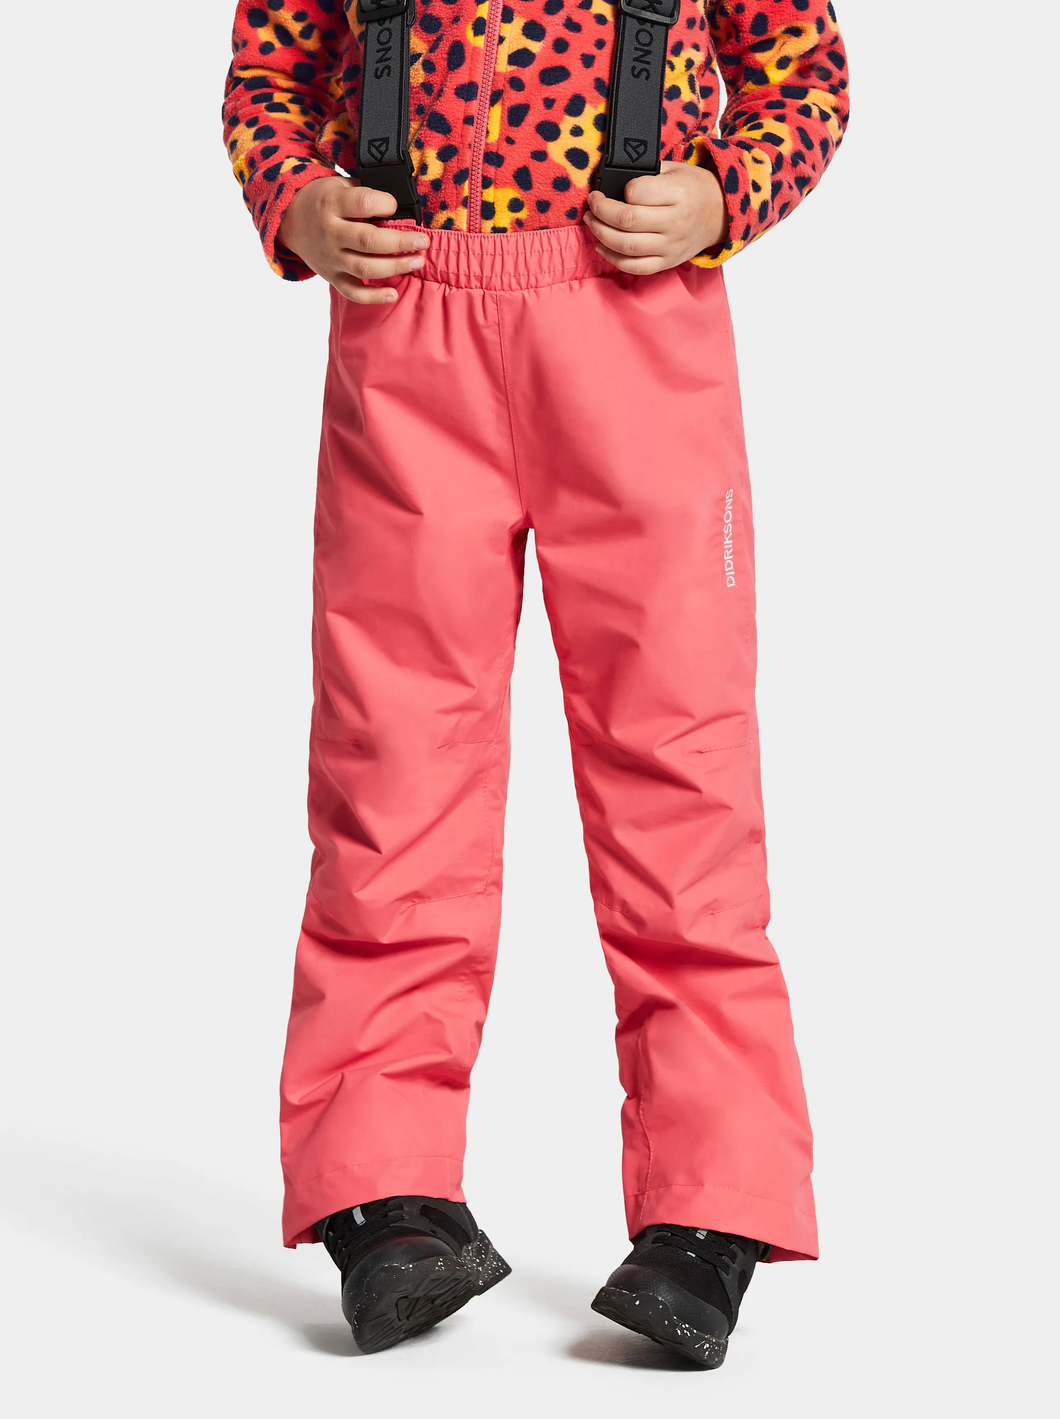 Didriksons Kids Idur 2 Waterproof Trousers (Peachy Pink)(Ages 1-10)